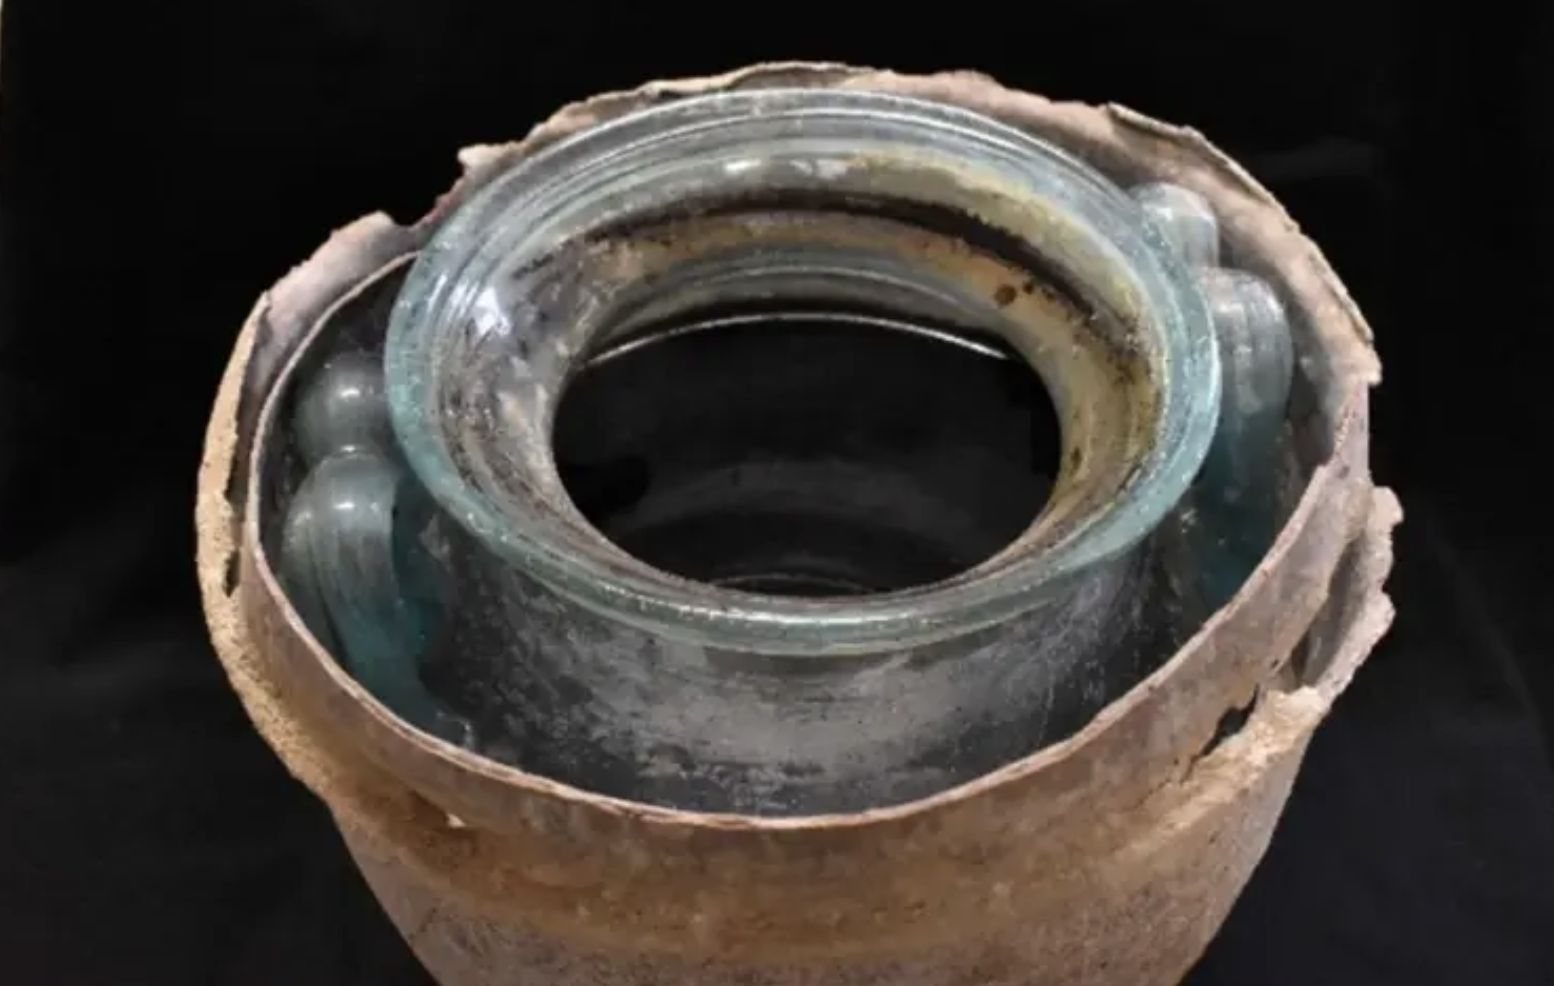 Vinho com dois mil anos encontrado em urna funerária de vidro com restos mortais